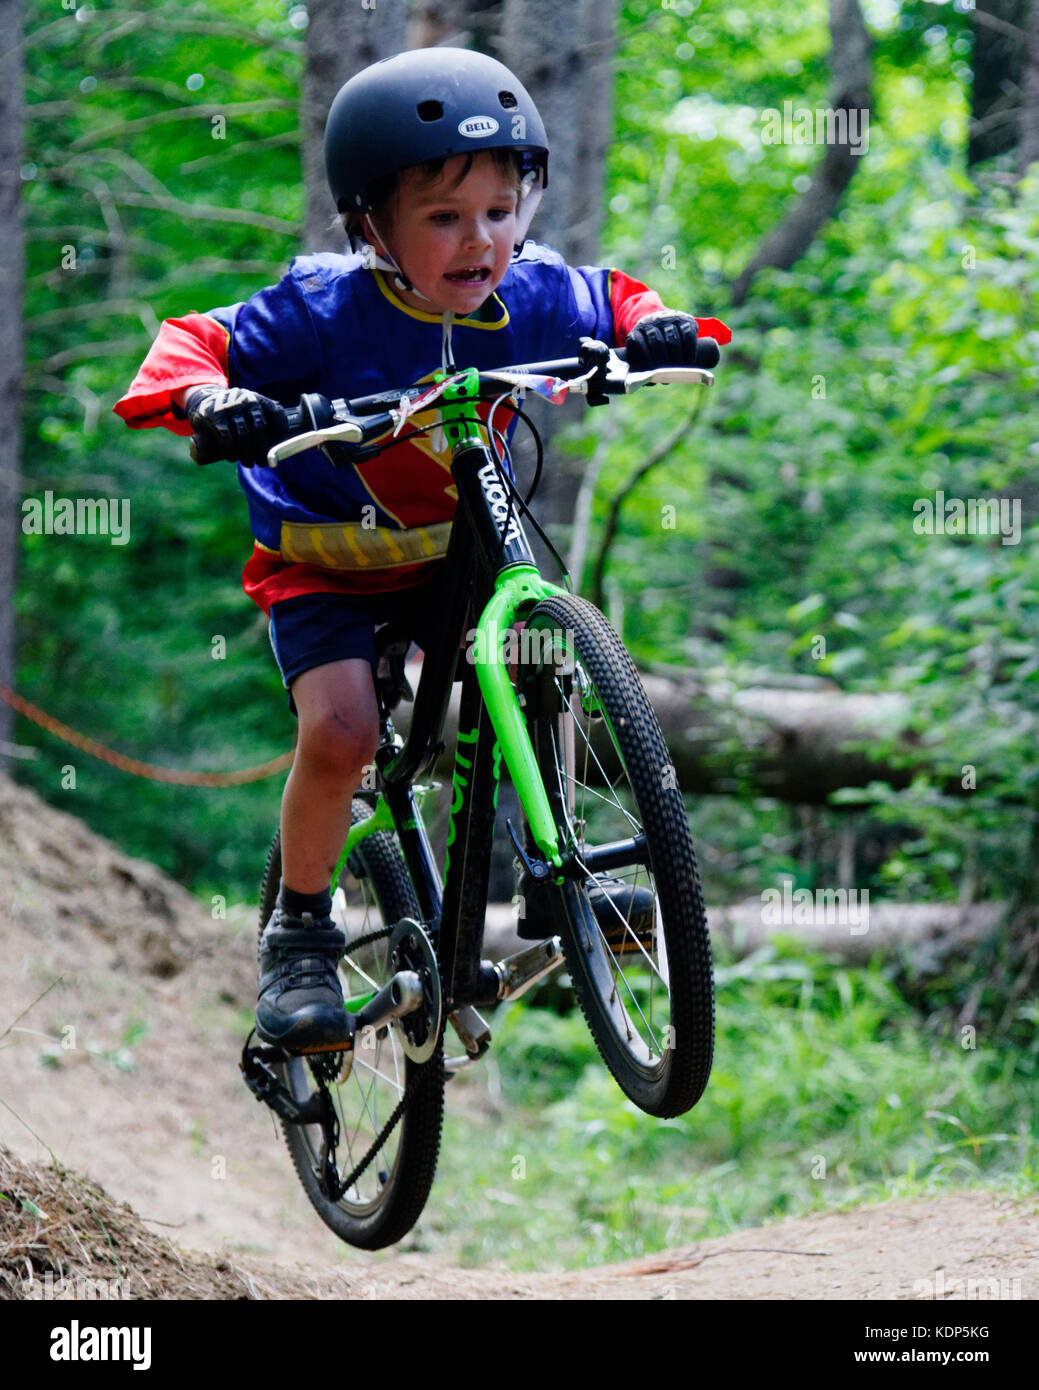 Un jeune garçon (5 ans) qui saute dans un vélo de montagne Banque D'Images